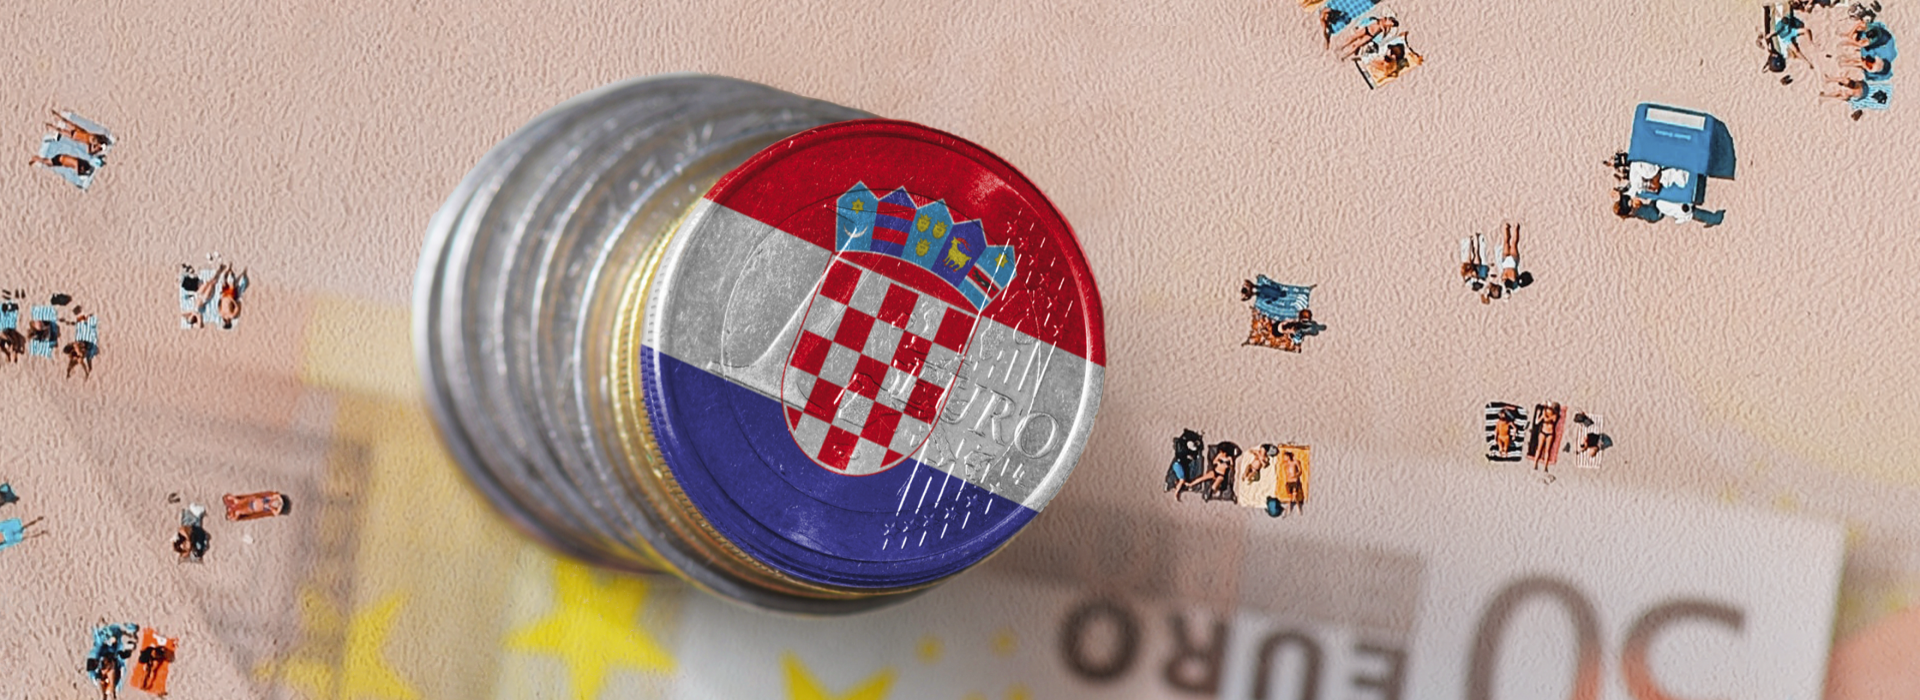 Turystyka Chorwacji po wejściu do strefy euro